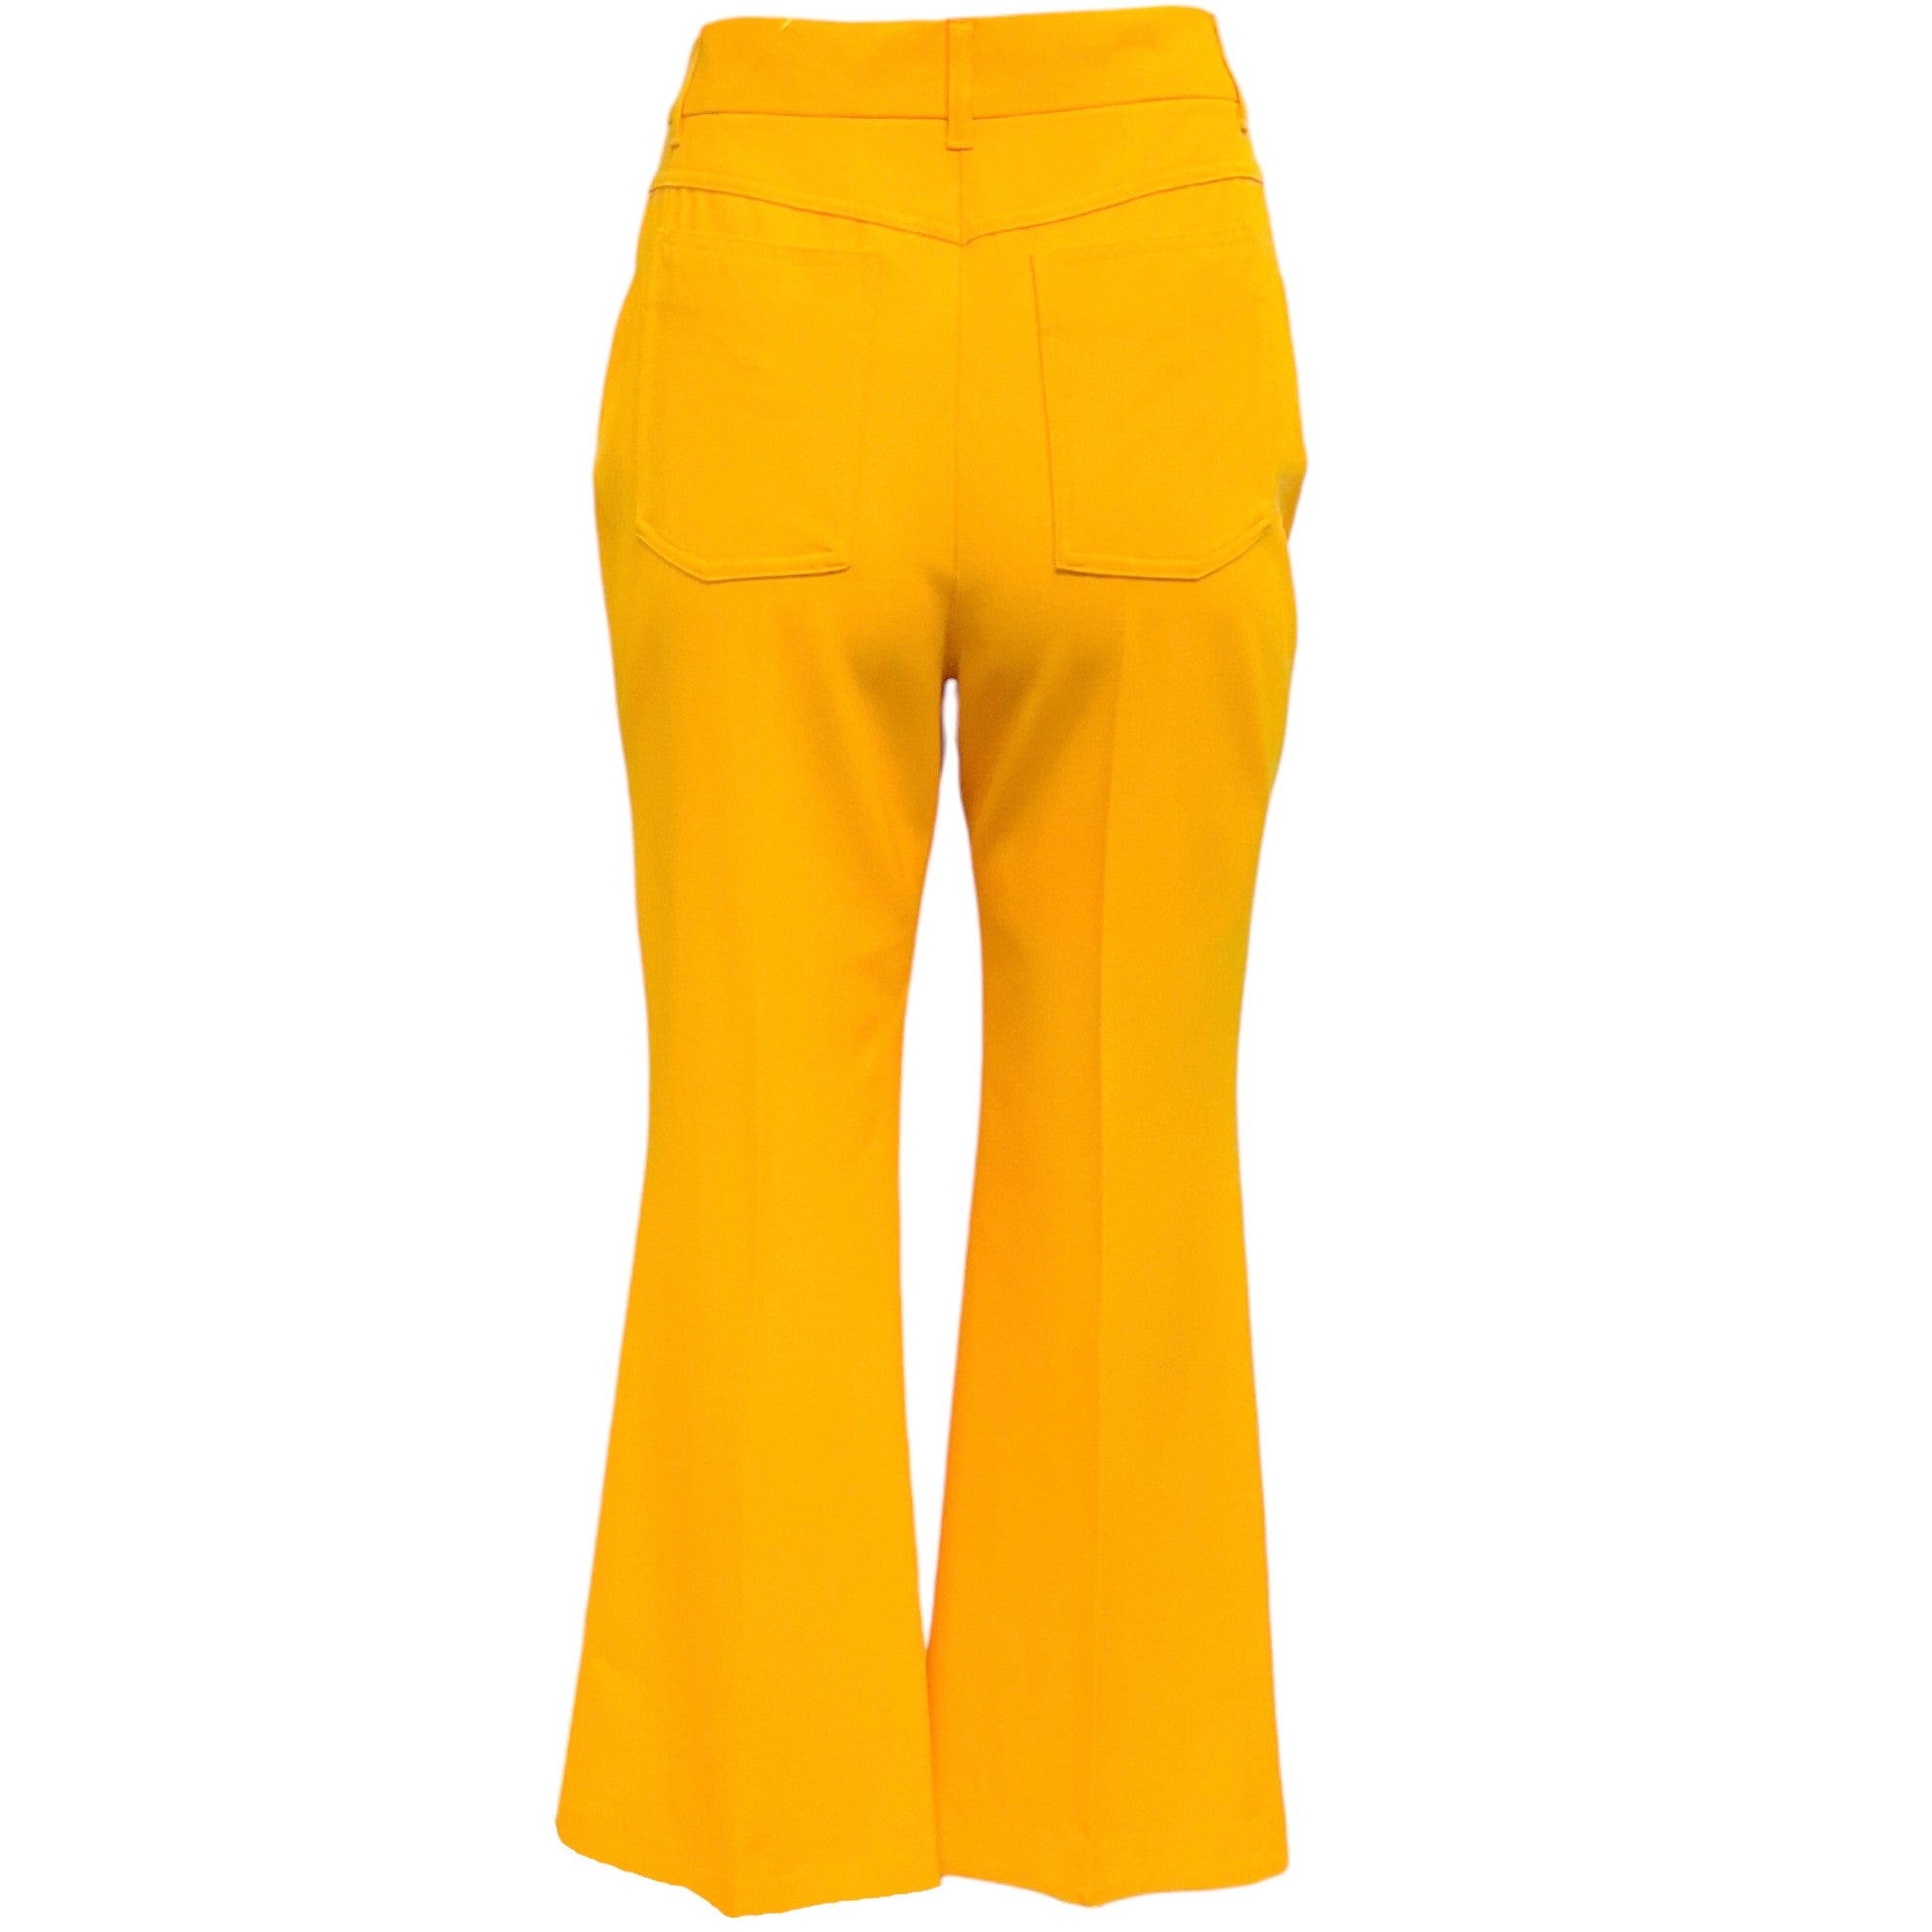 Stella McCartney Amber Yellow Five Pocket Pants